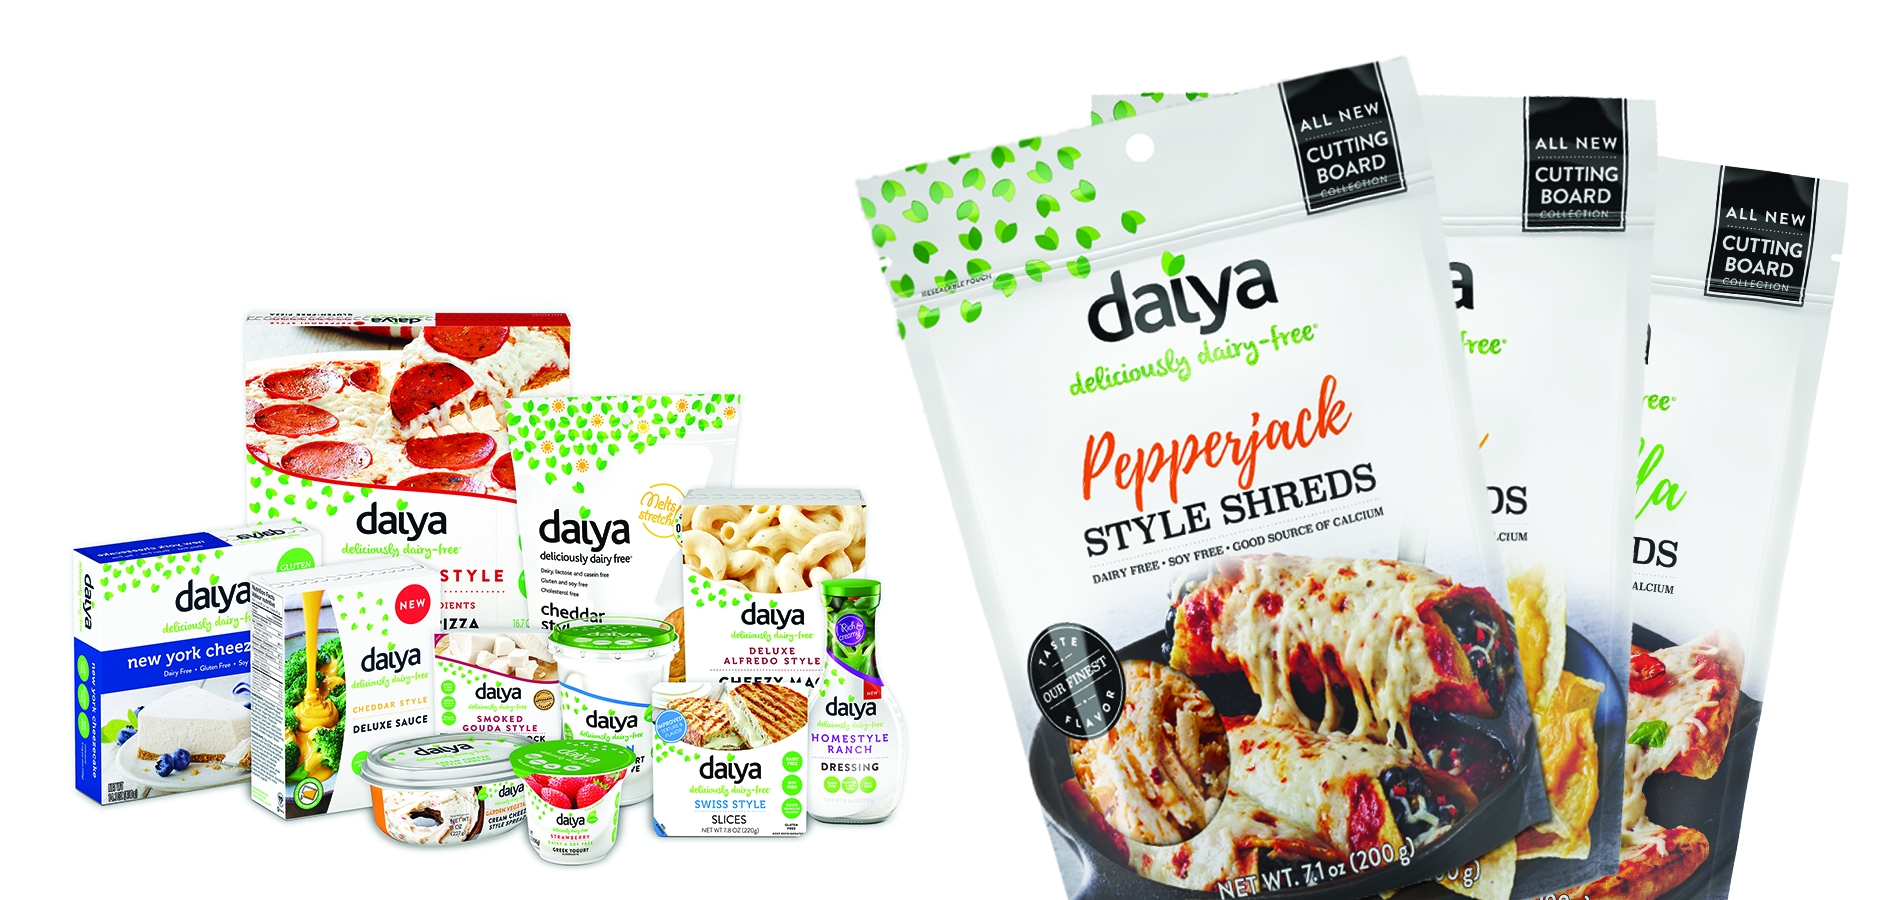 Daiya Foods image 2017